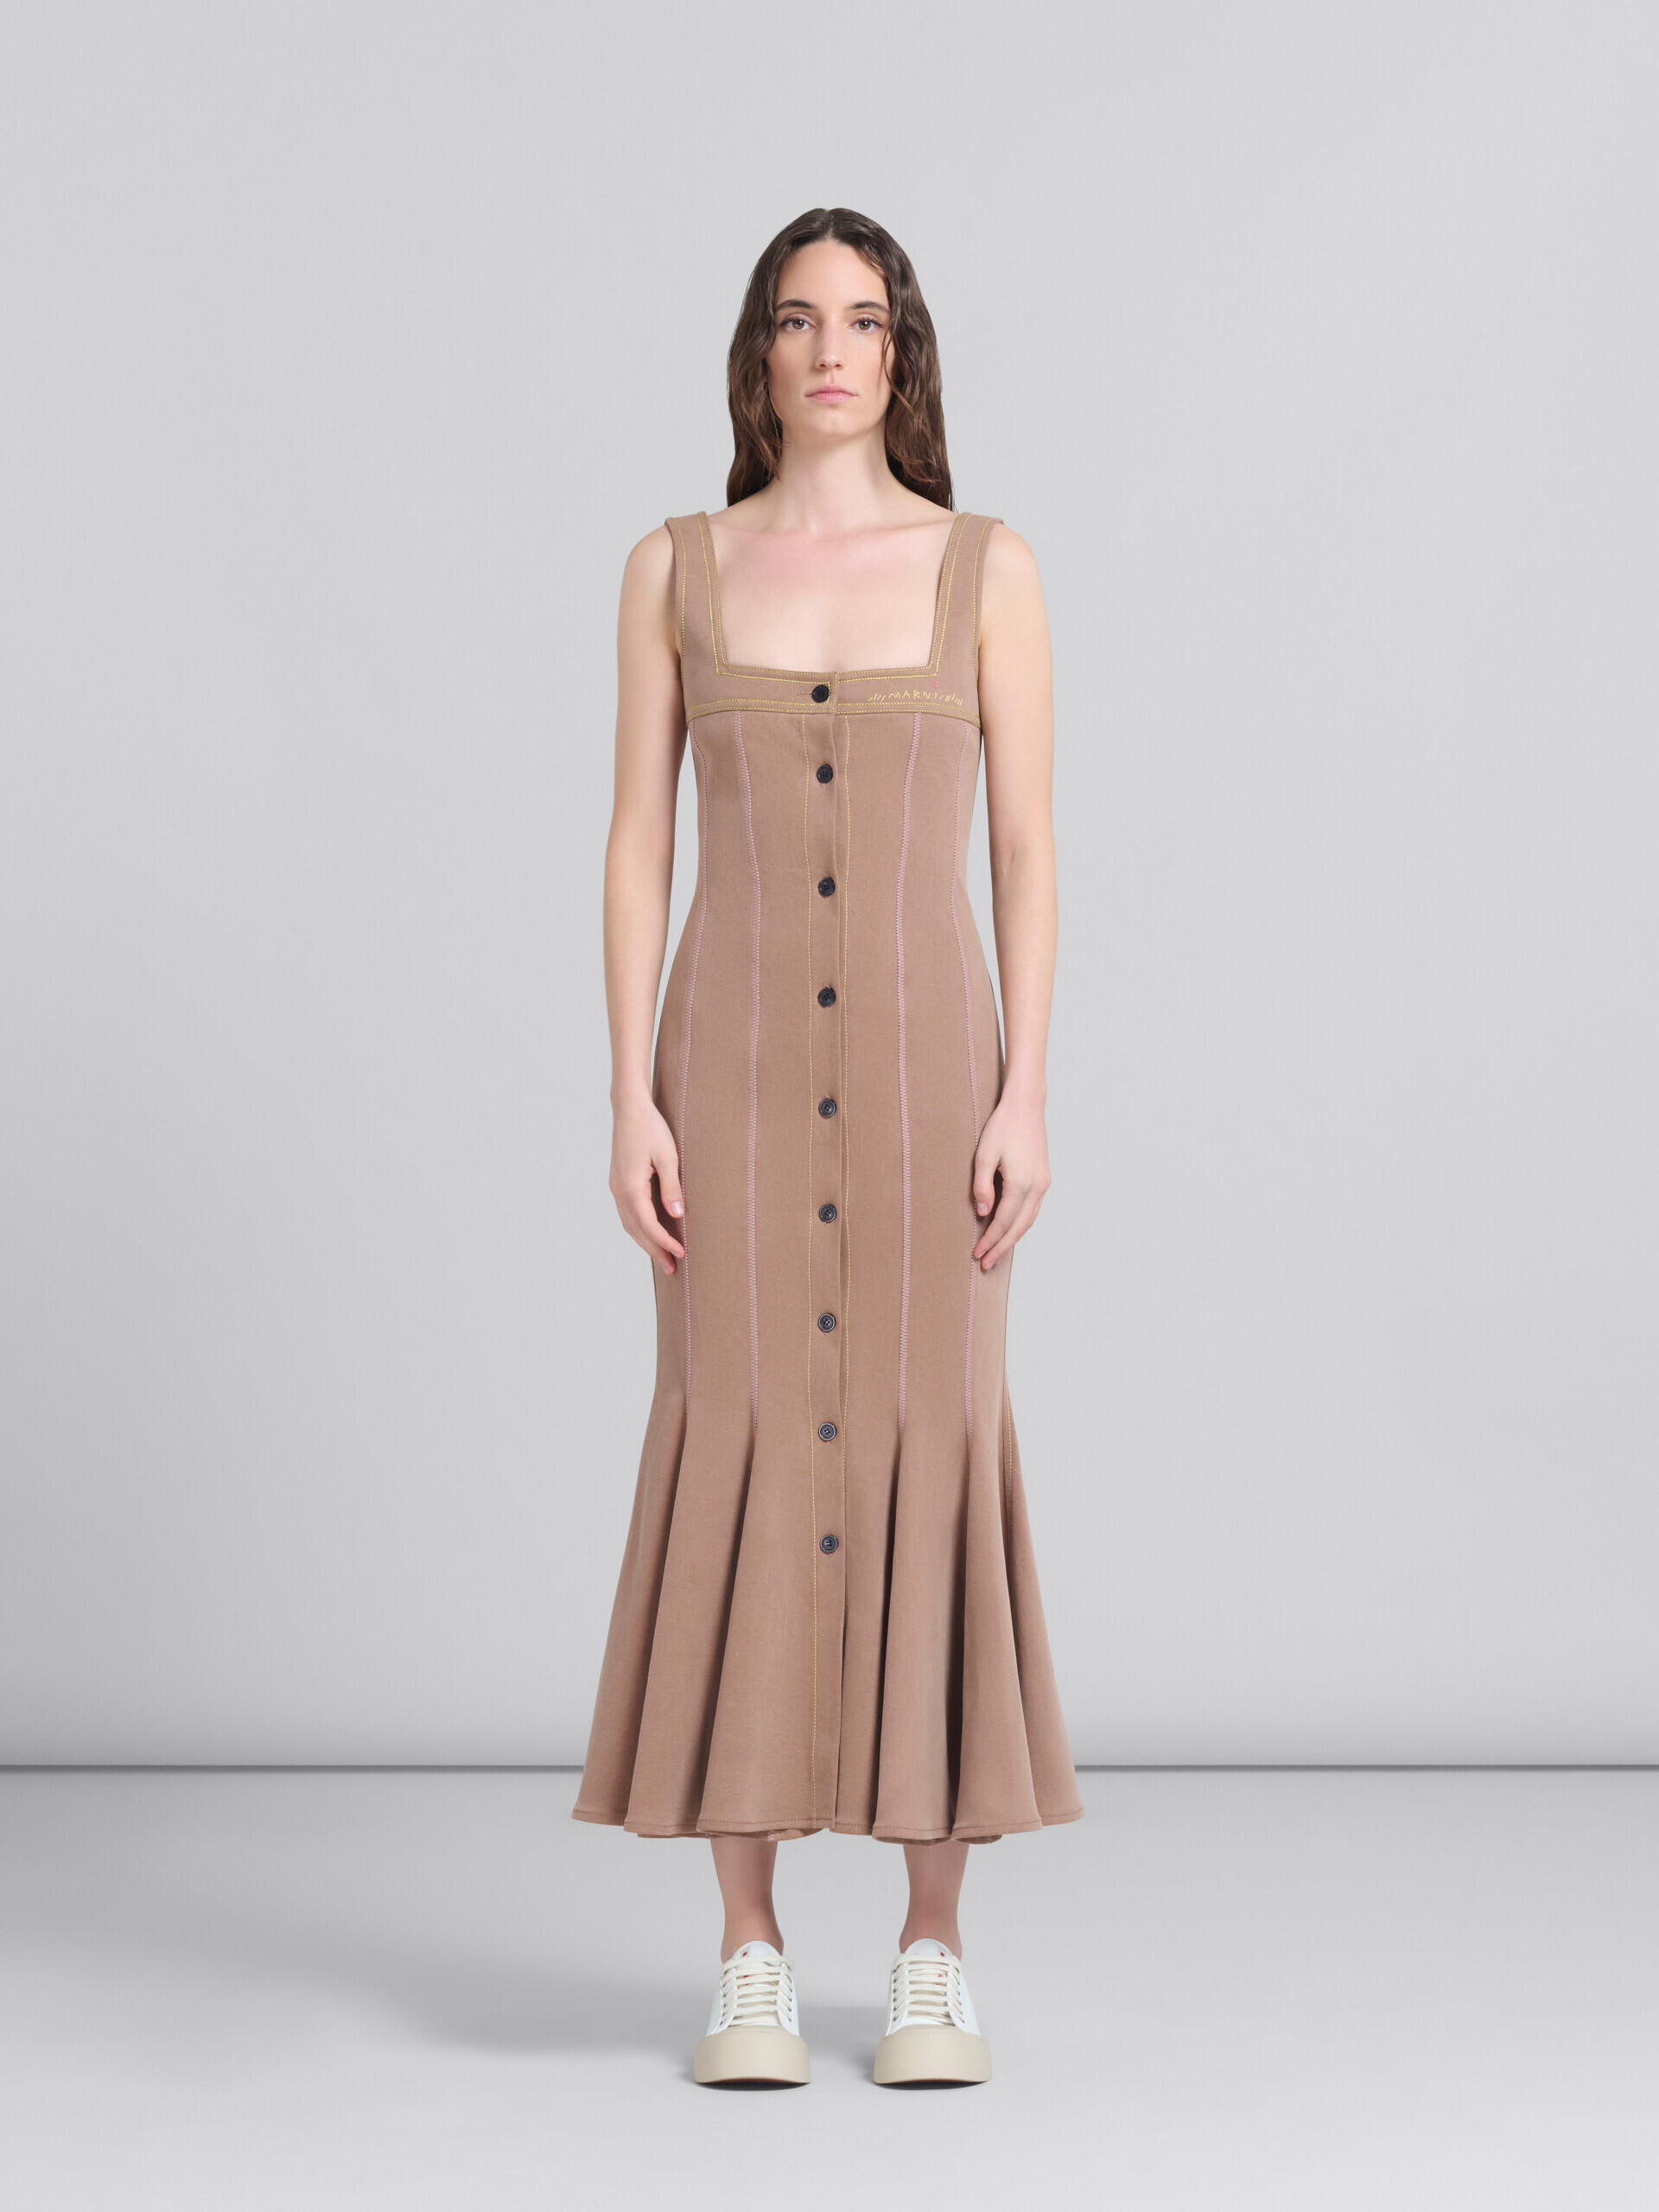 Robe sirène en denim organique marron avec coutures contrastées - Robes - Image 1